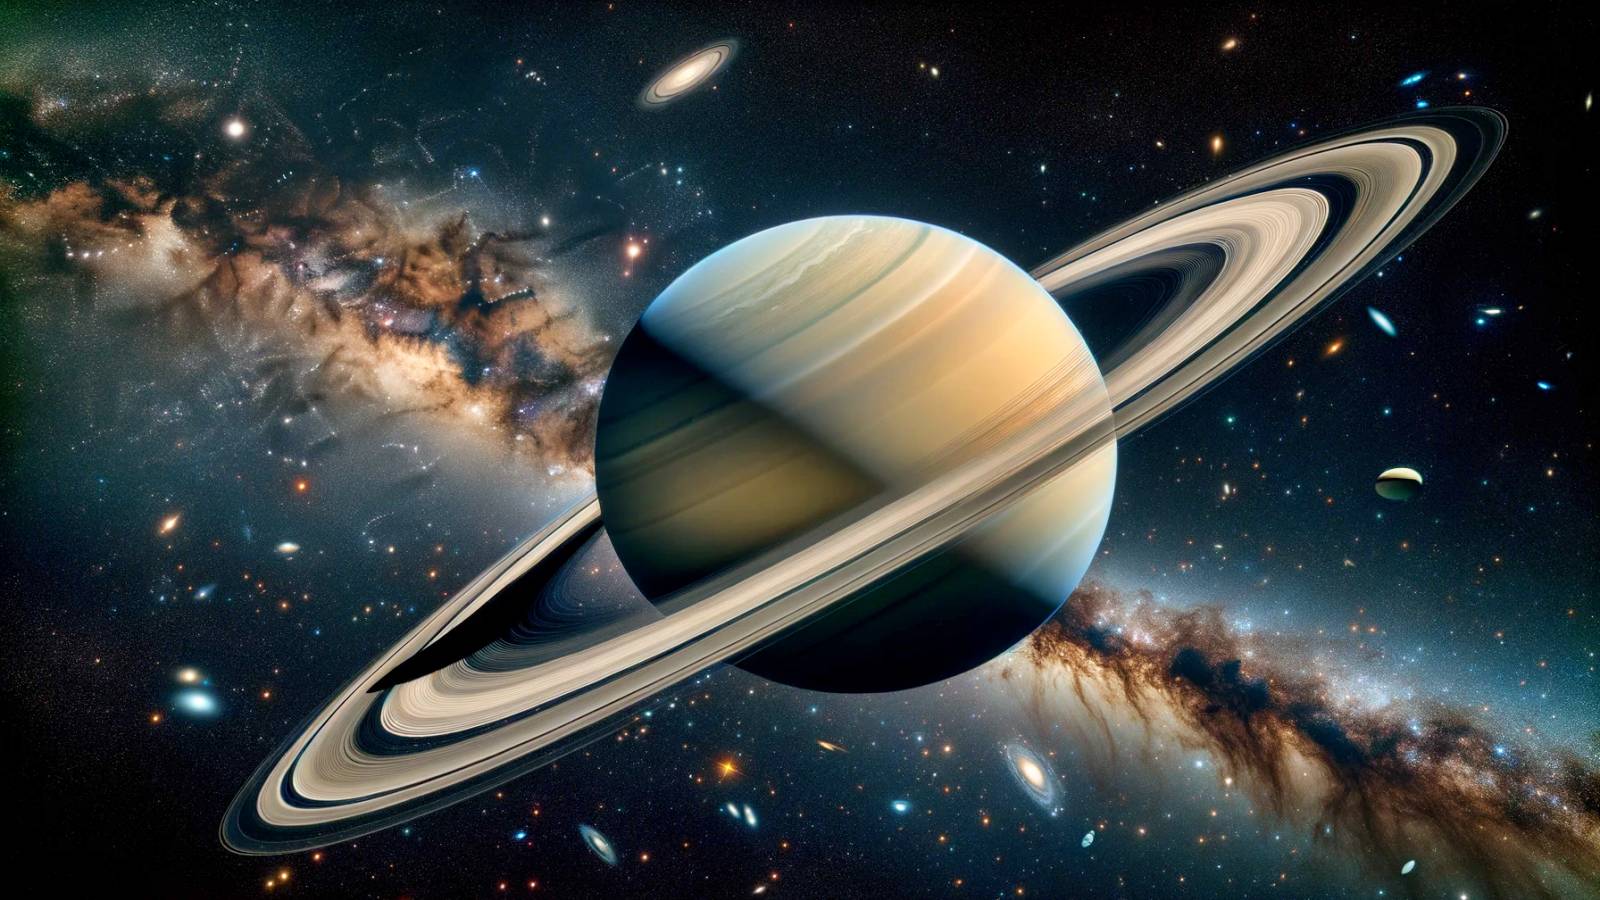 Planeta Saturno Misterios De Los Anillos Revelados Imágenes De Cassini